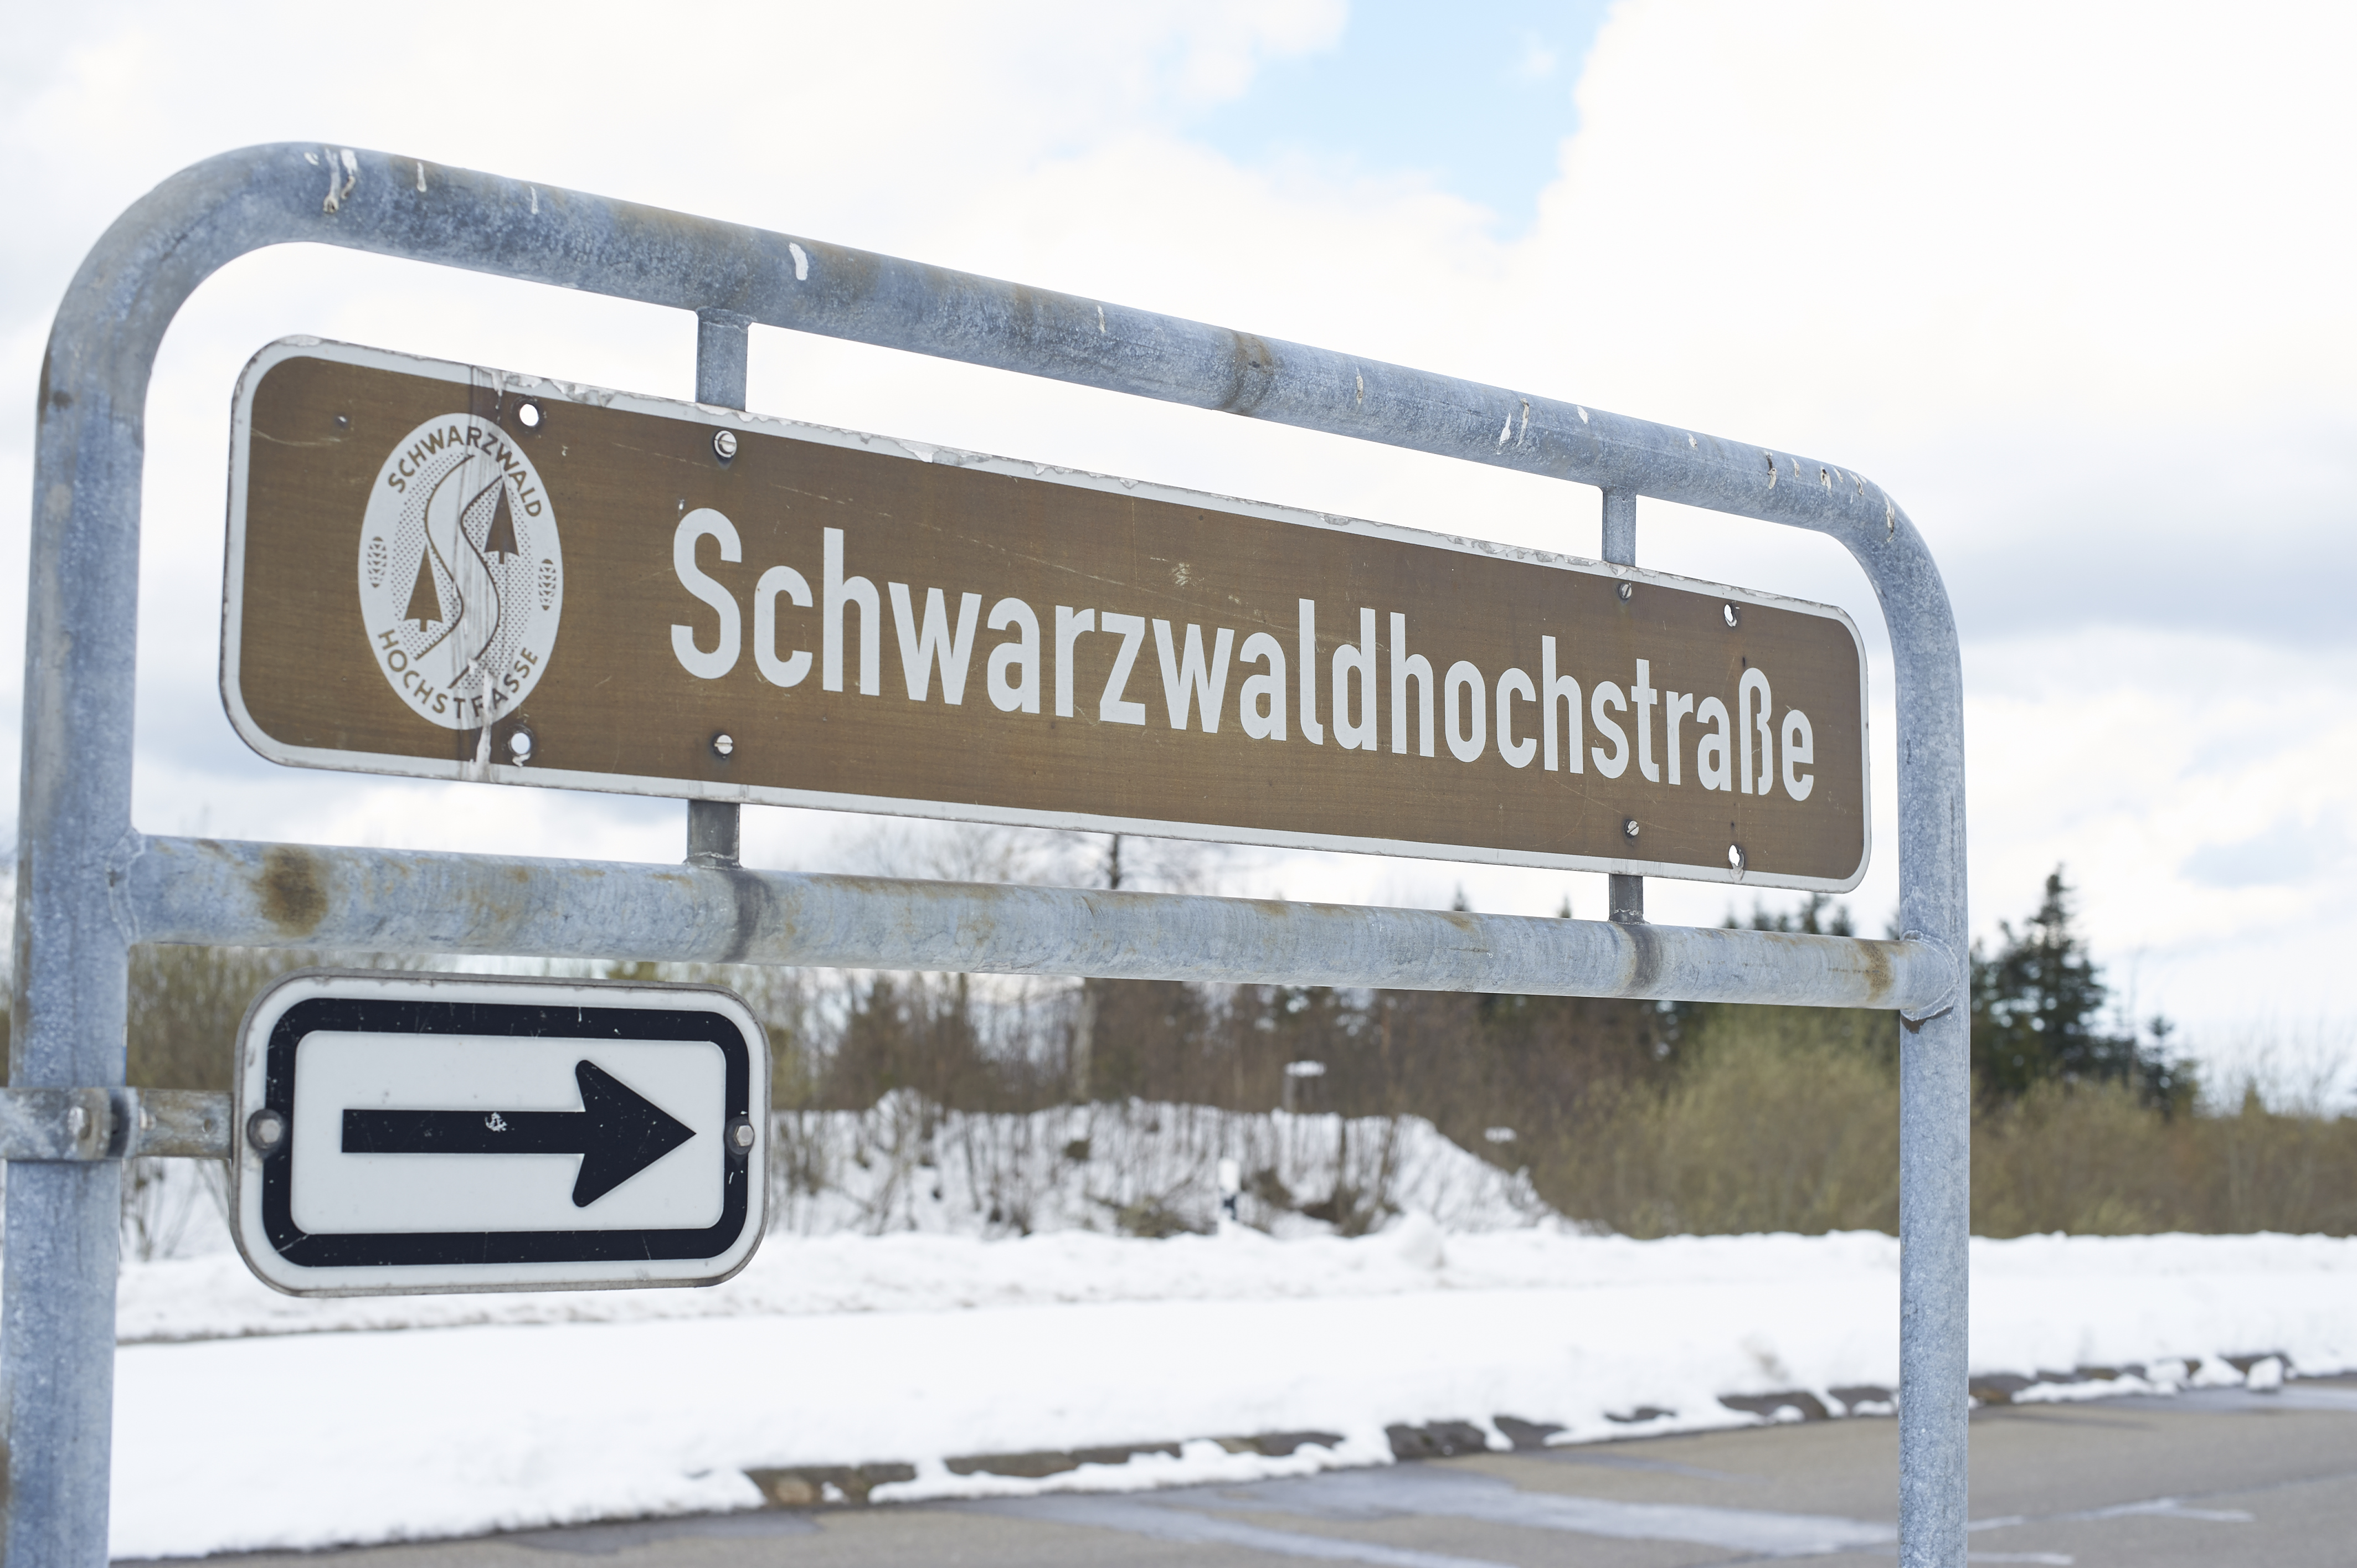 Porsche European Delivery Tour - Schwarzwaldhochstrase